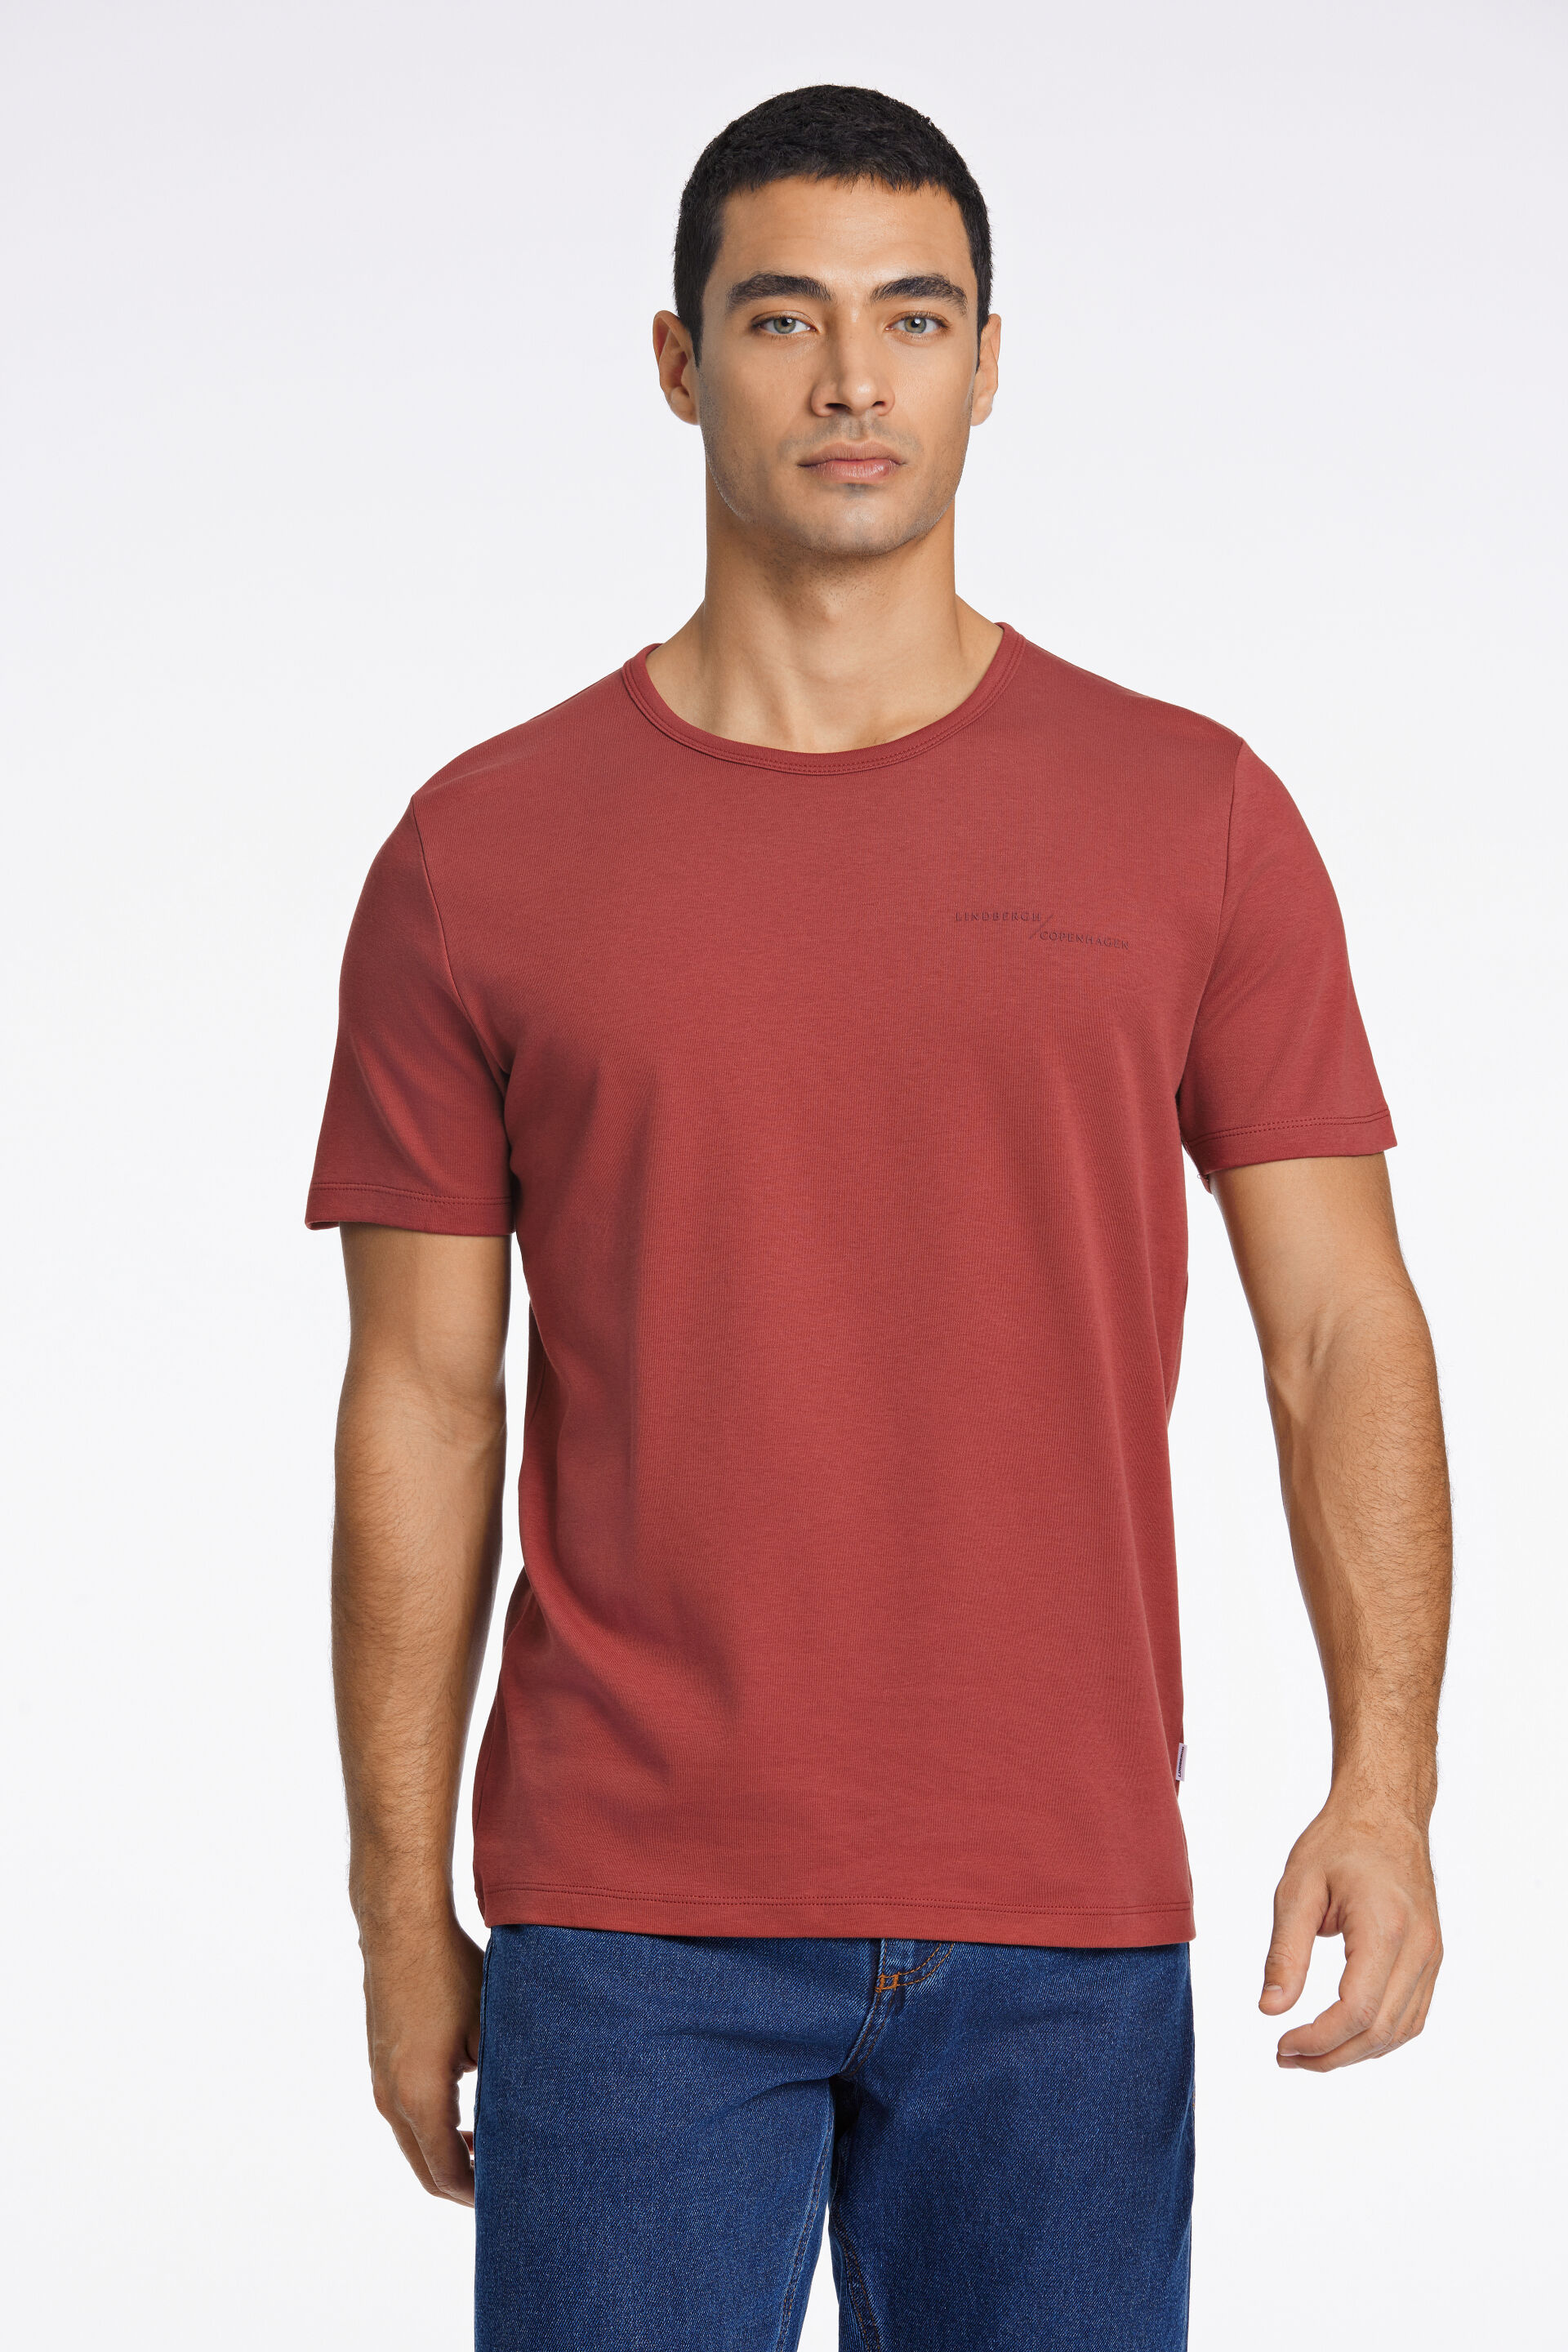 T-shirt T-shirt Rød 30-400238